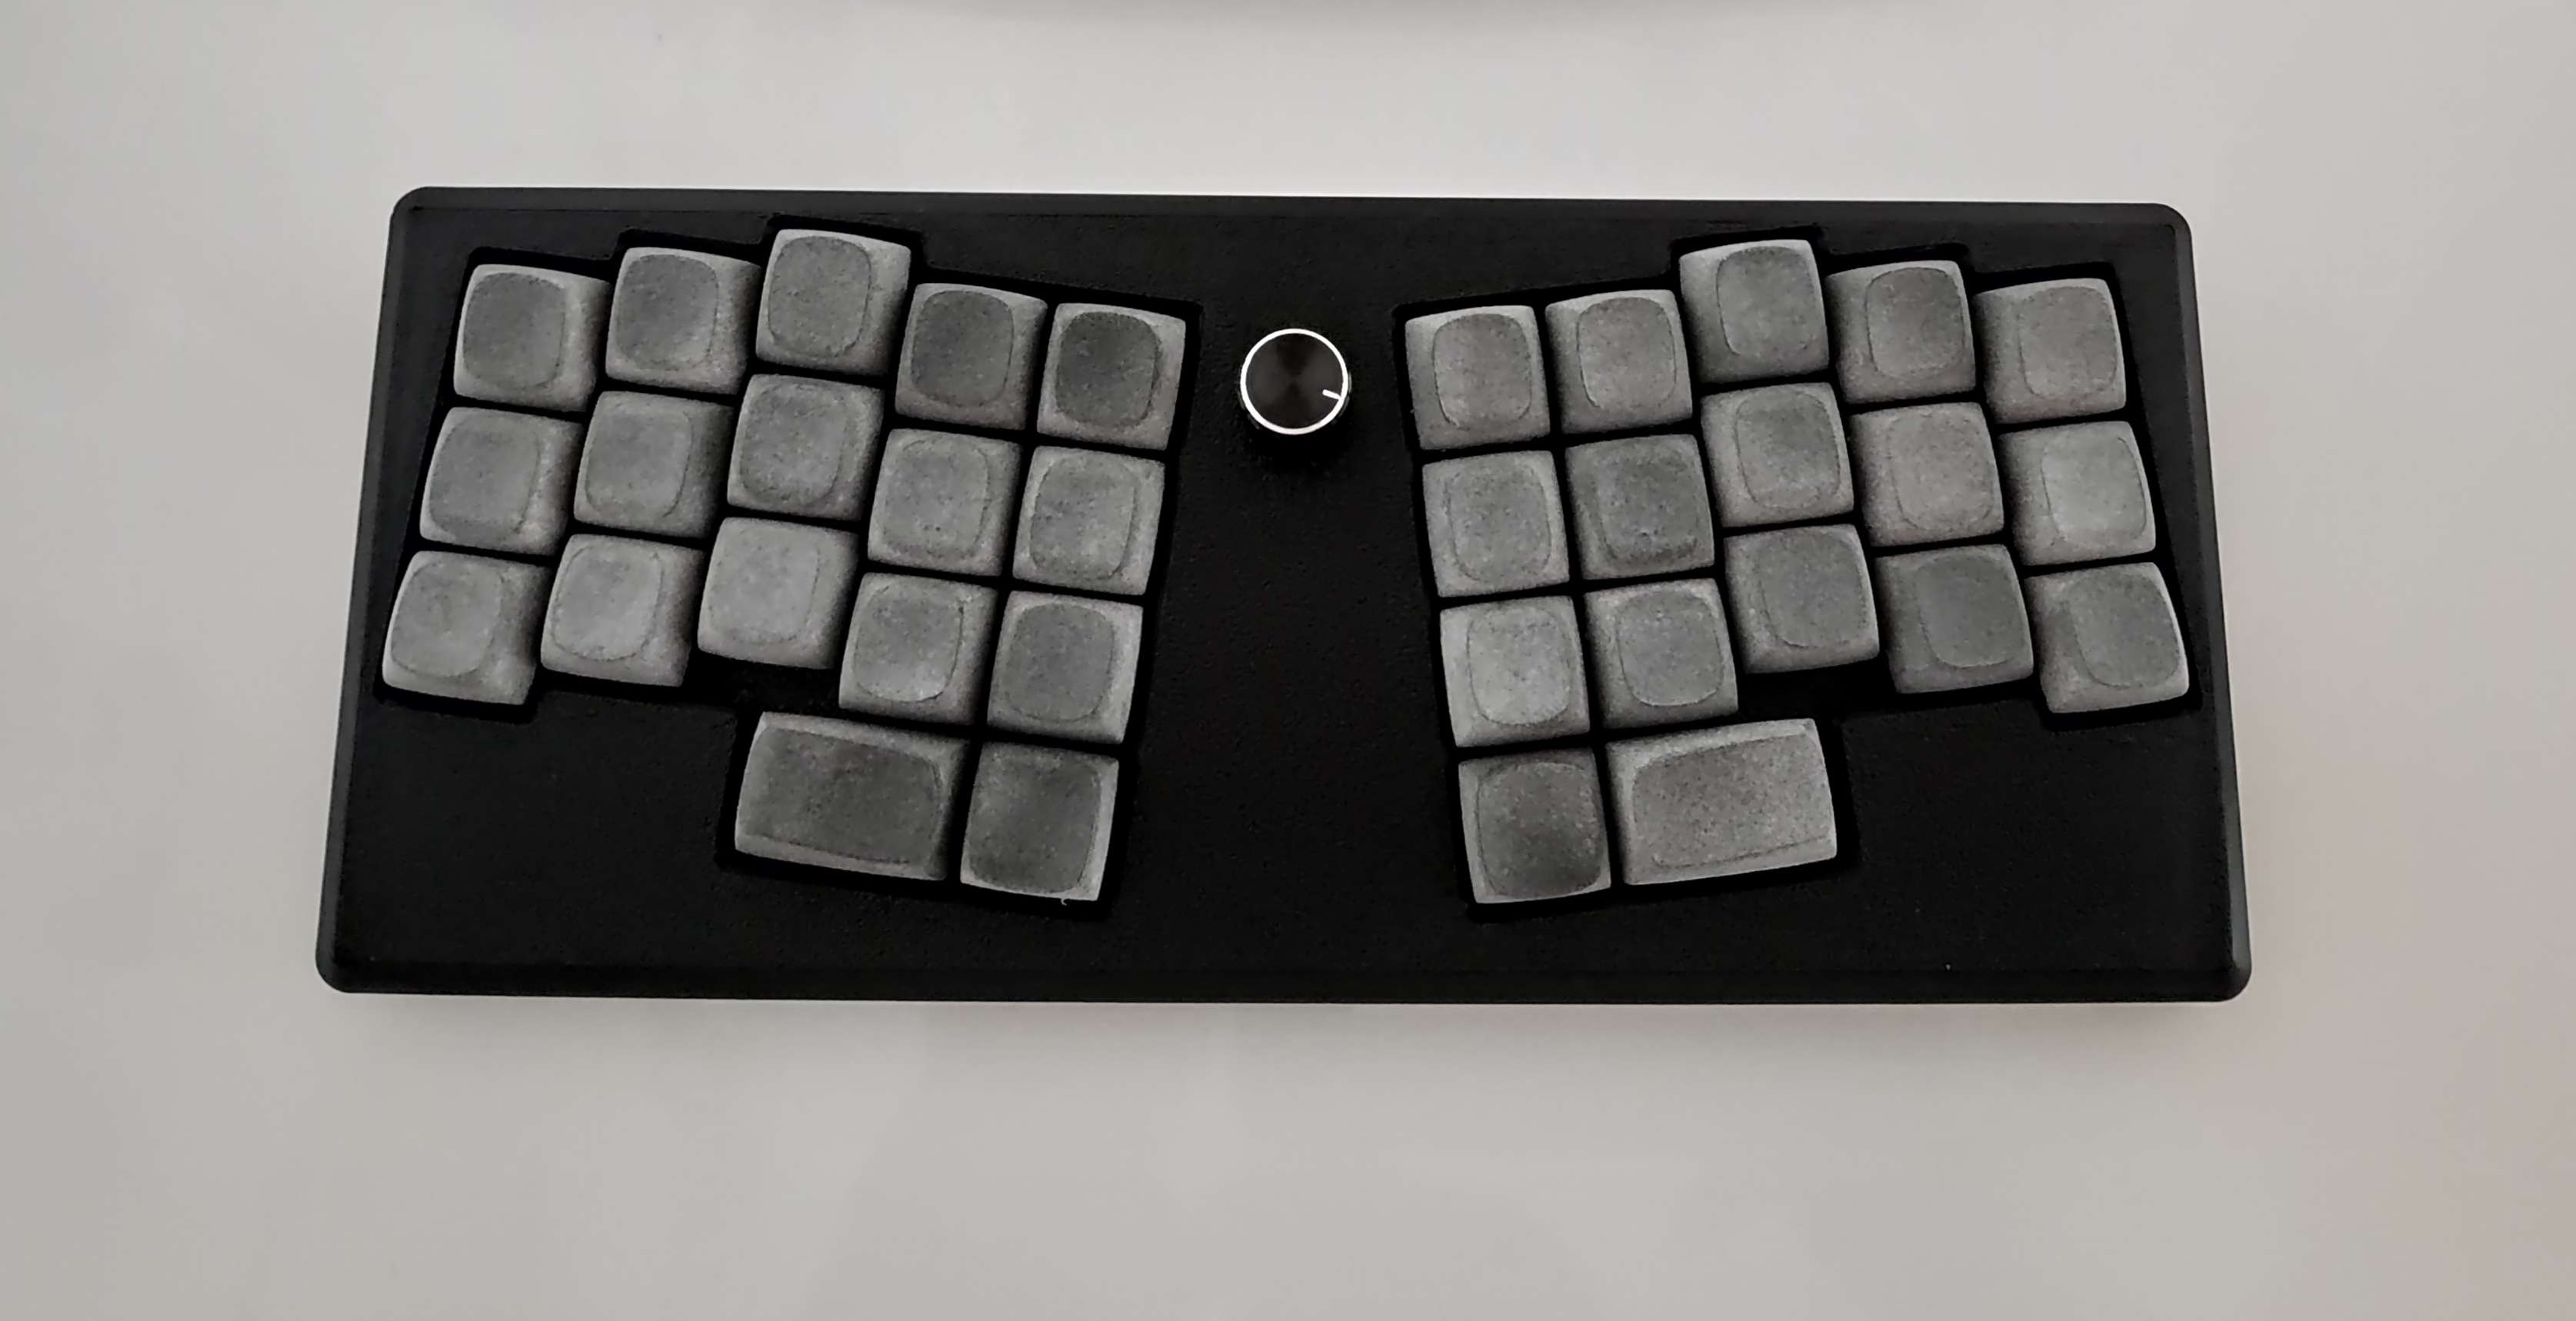 Le Yiffre Keyboard